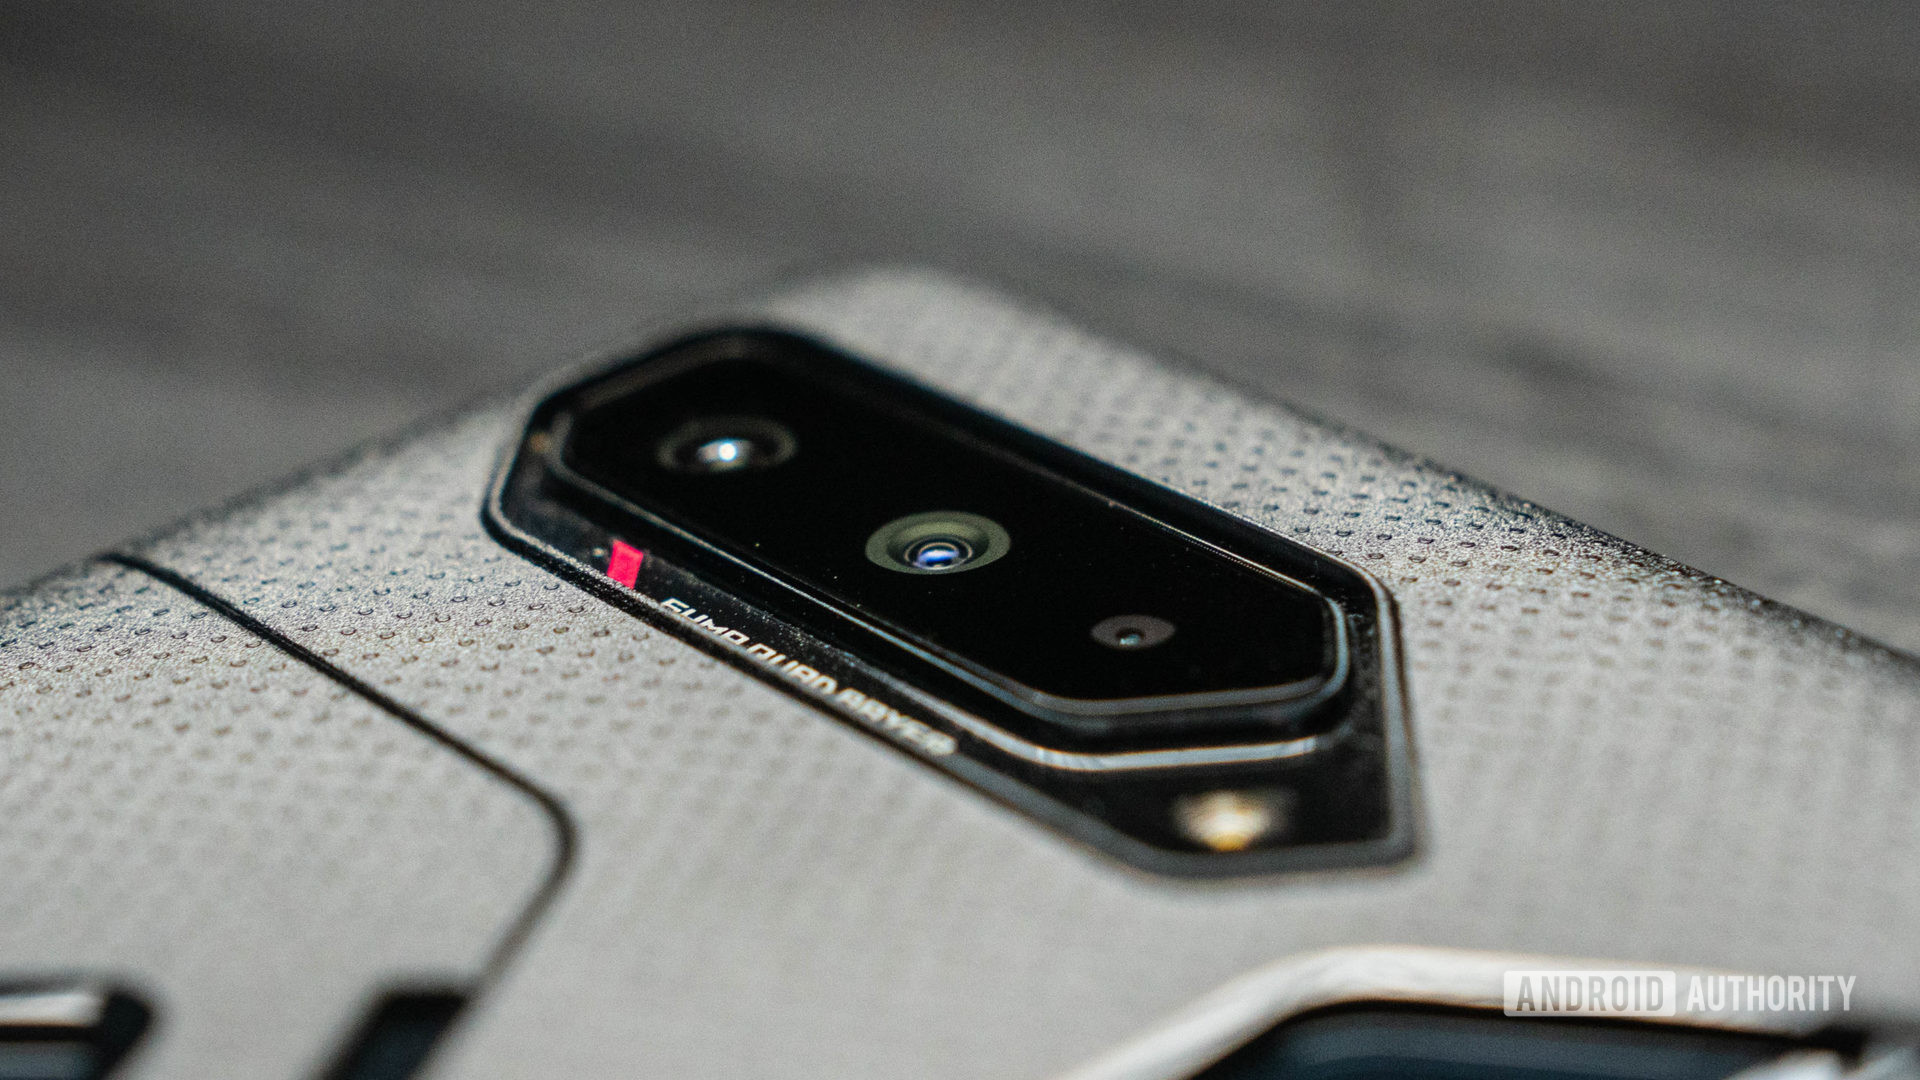 Bidikan produk Asus ROG Phone 5 dari benturan tiga kamera melalui kasing yang disertakan